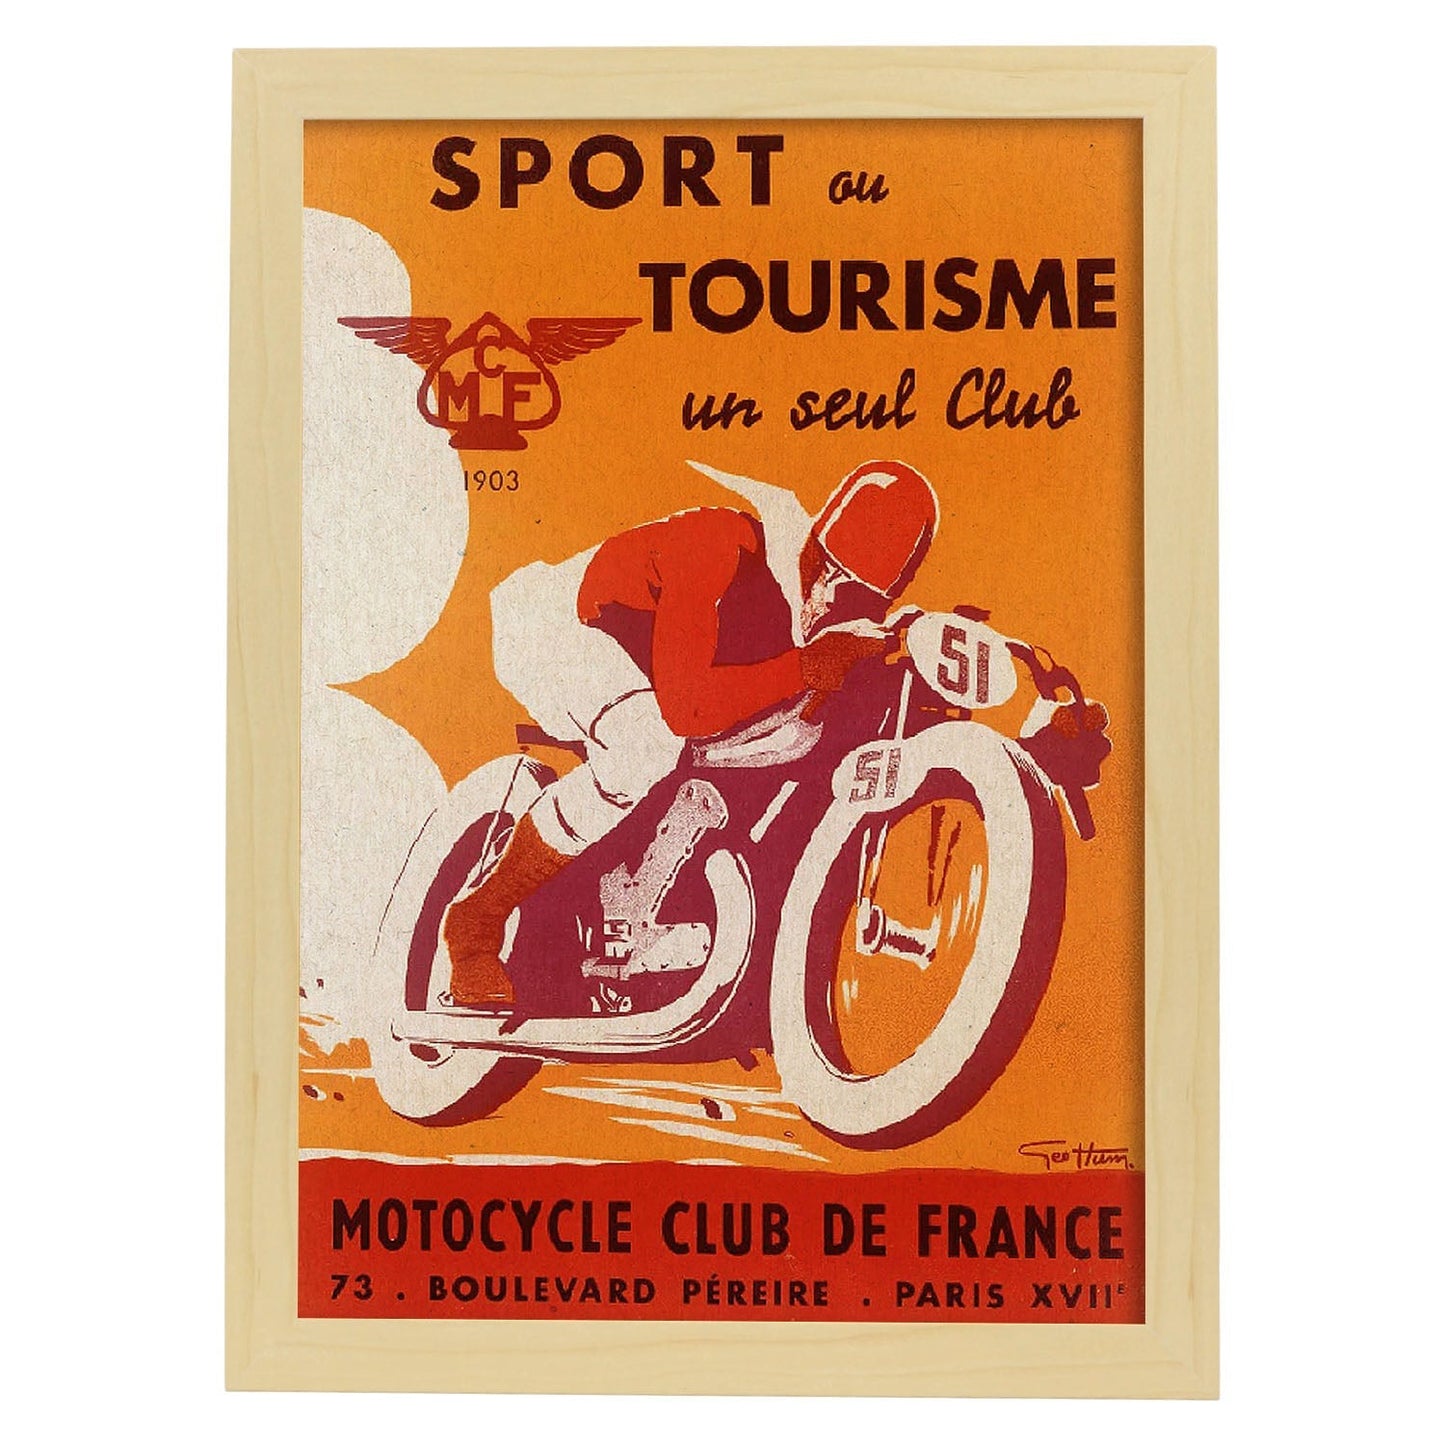 Poster vintage. Anuncio vintage del Sport ou Tourisme un seul Club Motorcycle Club de France.-Artwork-Nacnic-A4-Marco Madera clara-Nacnic Estudio SL